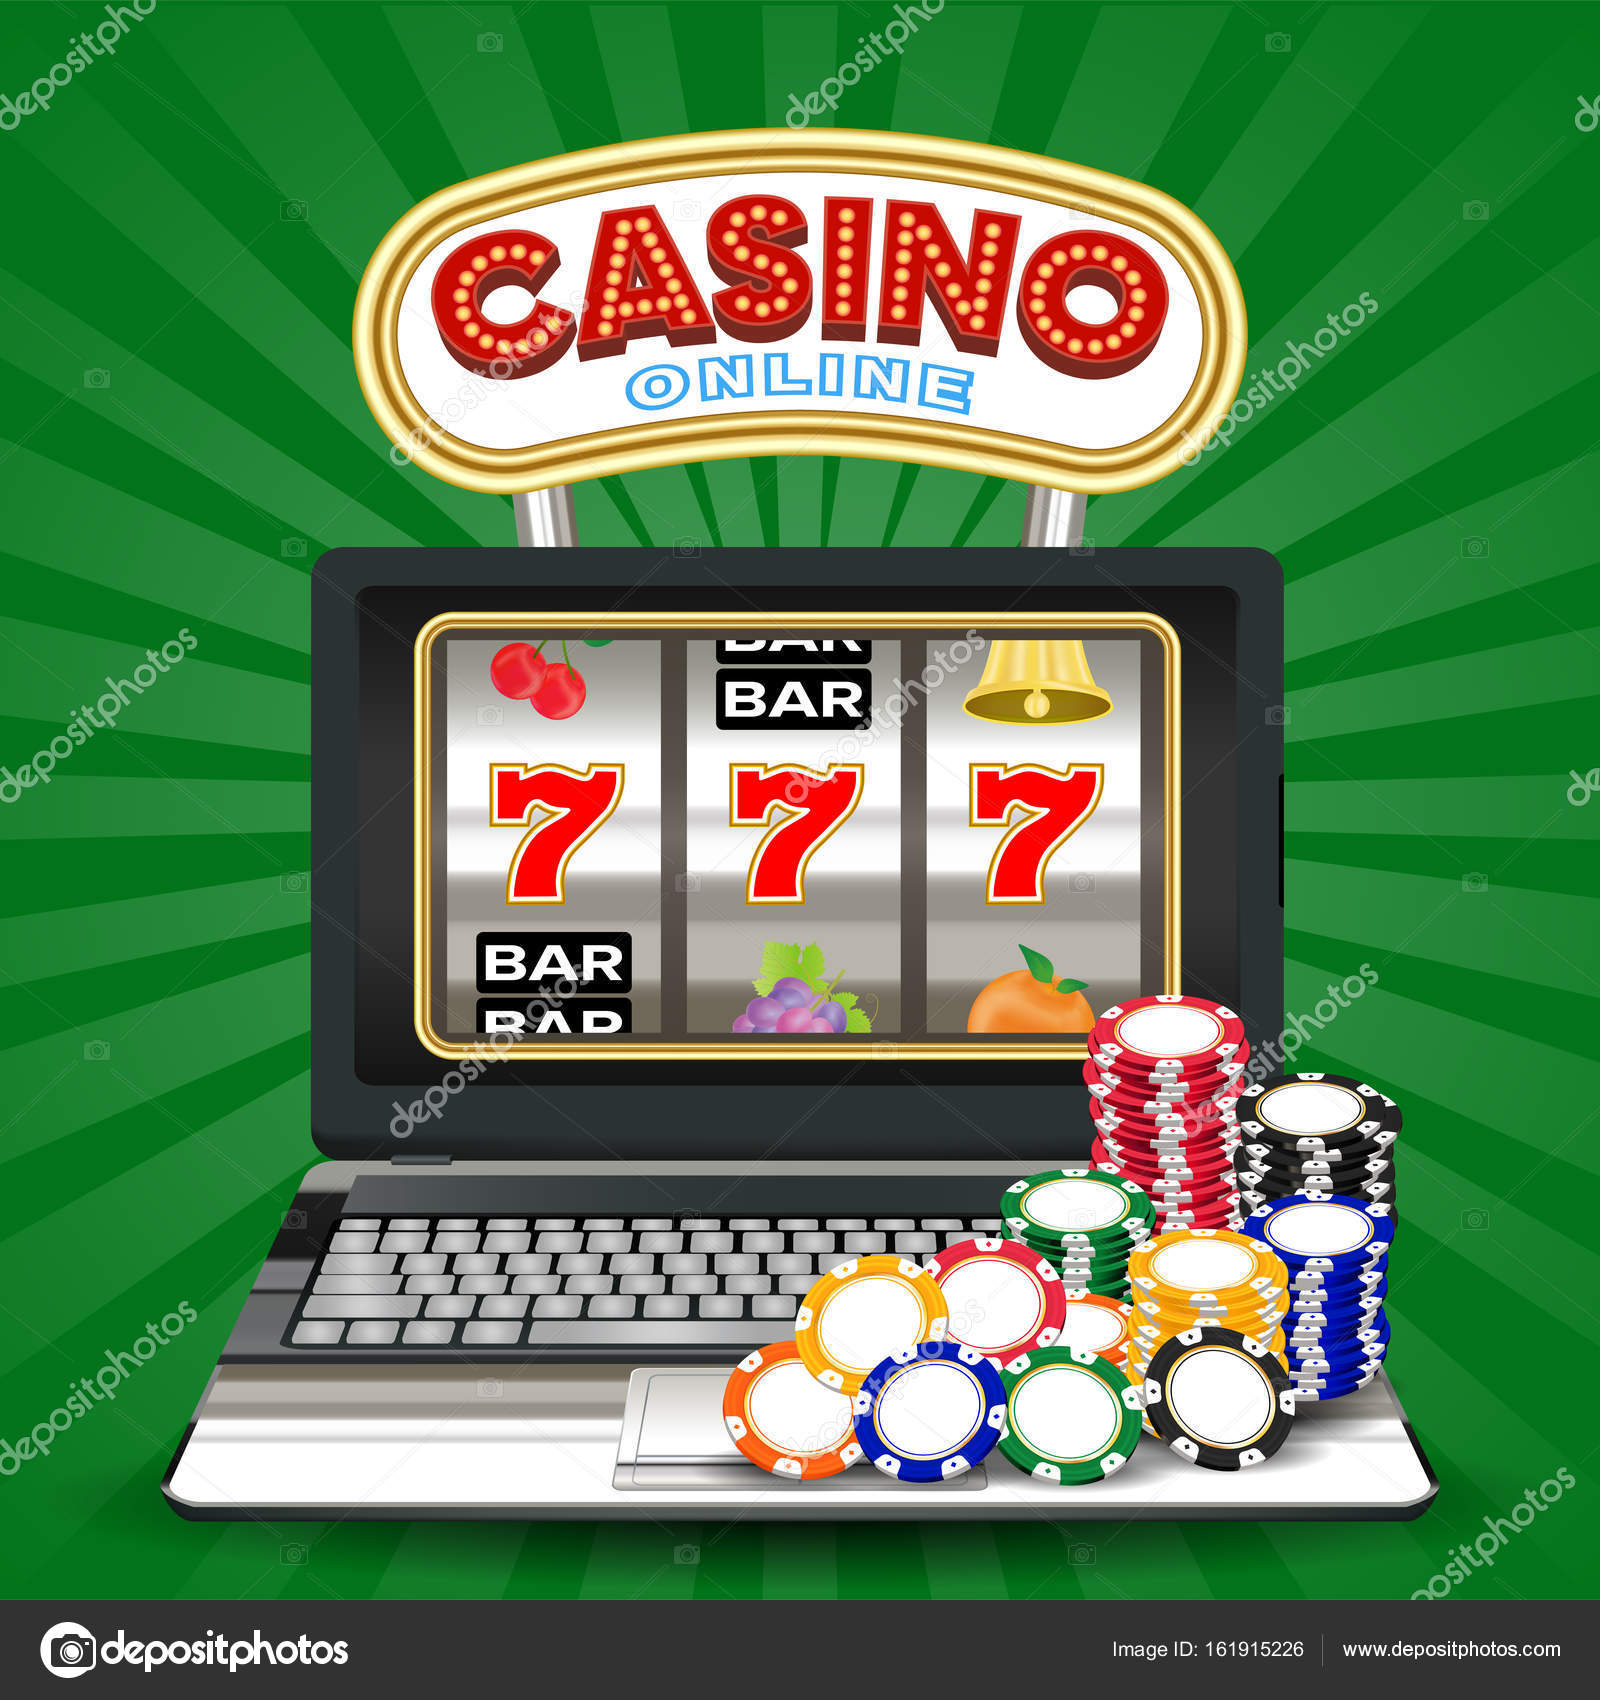 Friends casino официальный сайт